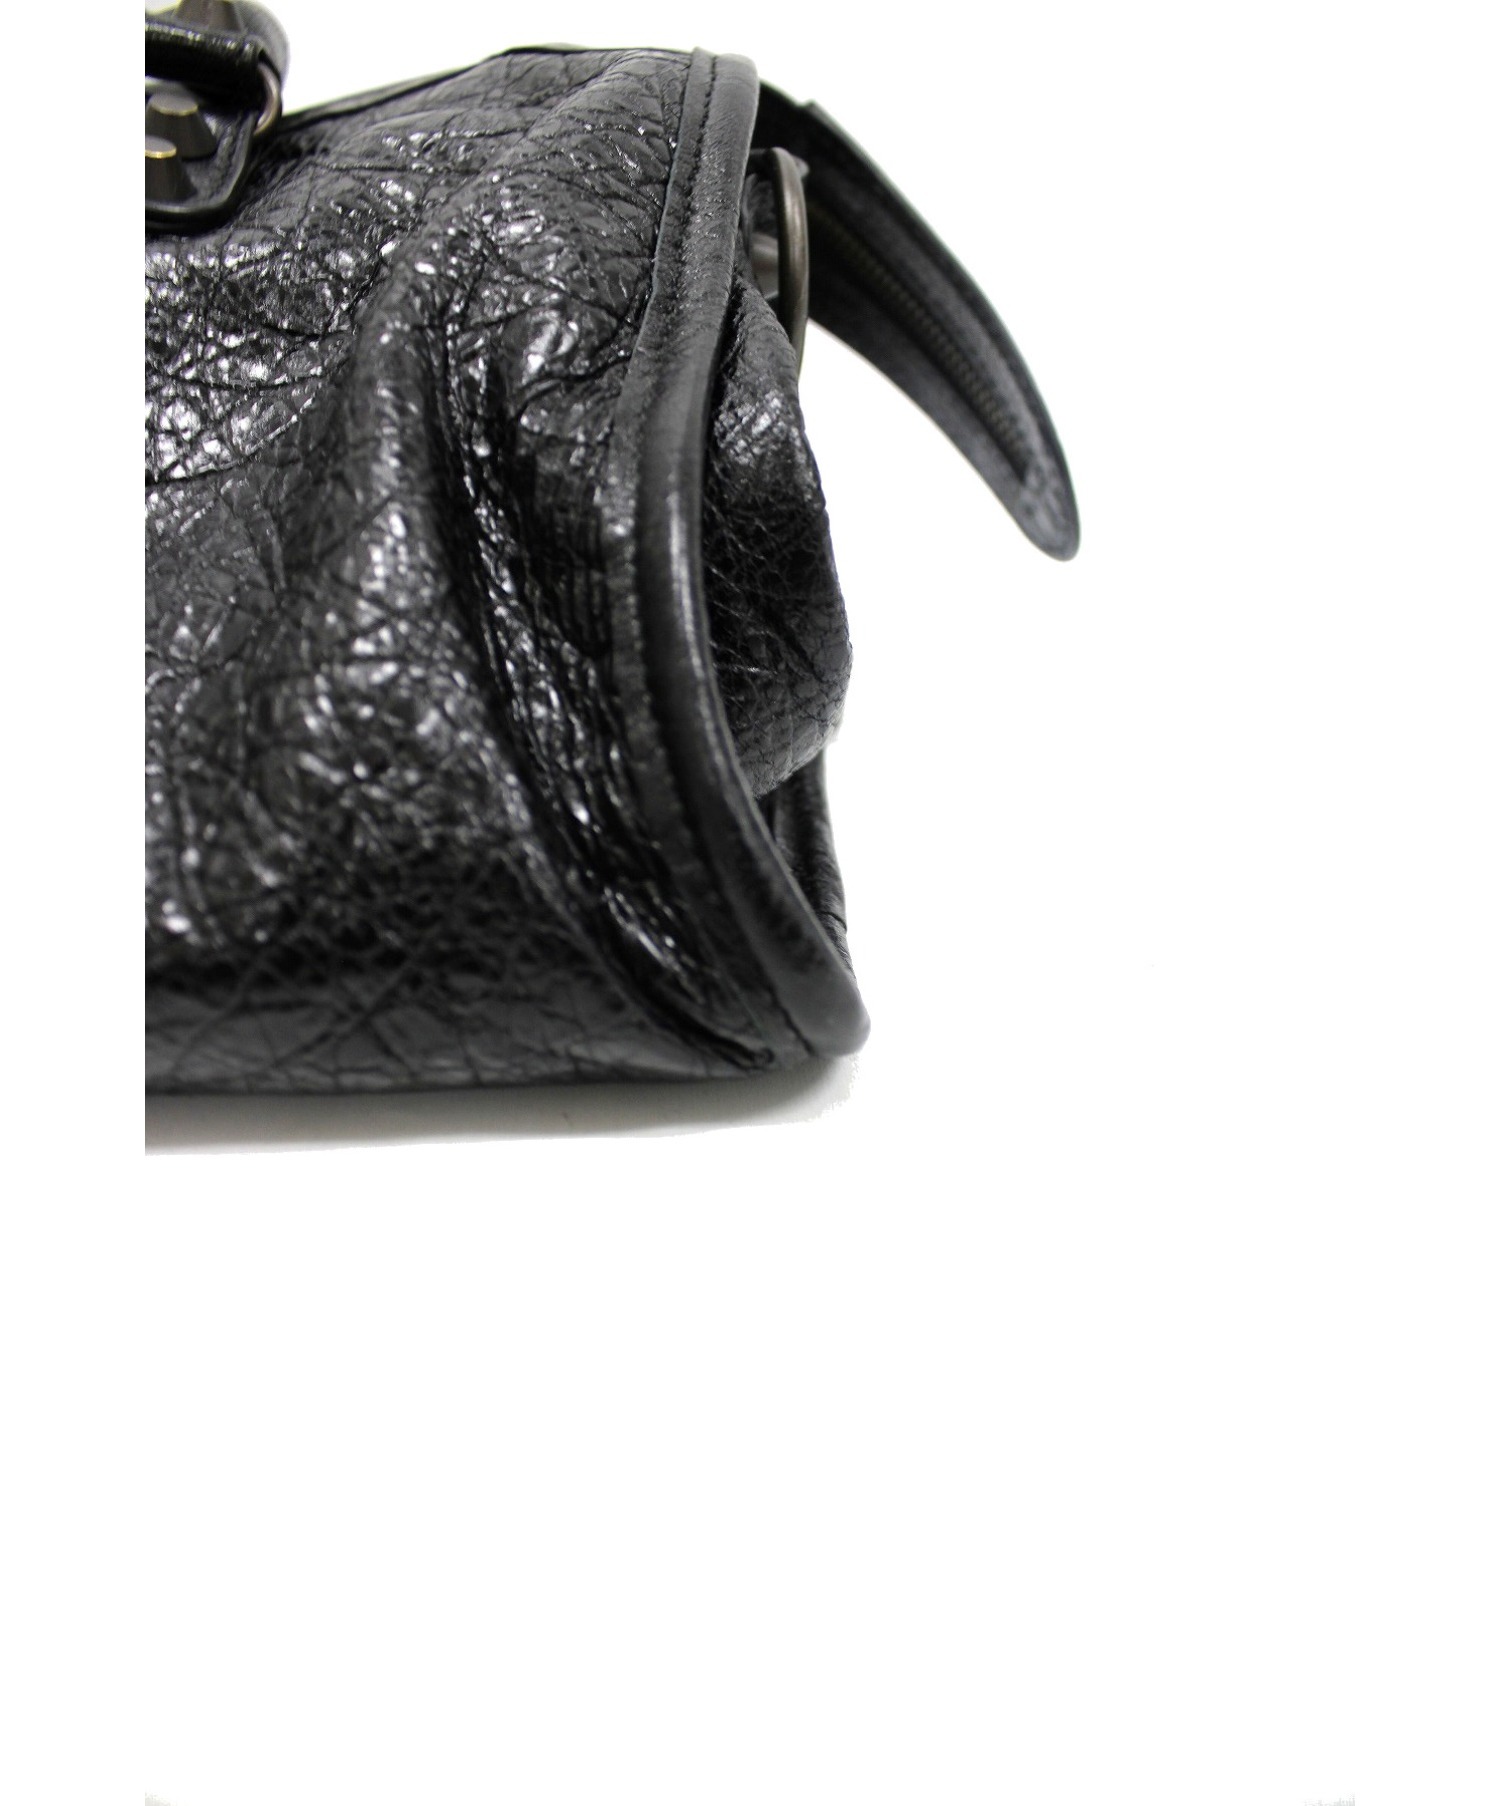 BALENCIAGA (バレンシアガ) 2wayハンドバッグ ブラック サイズ:表記なしの為、実寸サイズをご参照ください。 431621 1060 Z  568024 CLASSIC CITY S